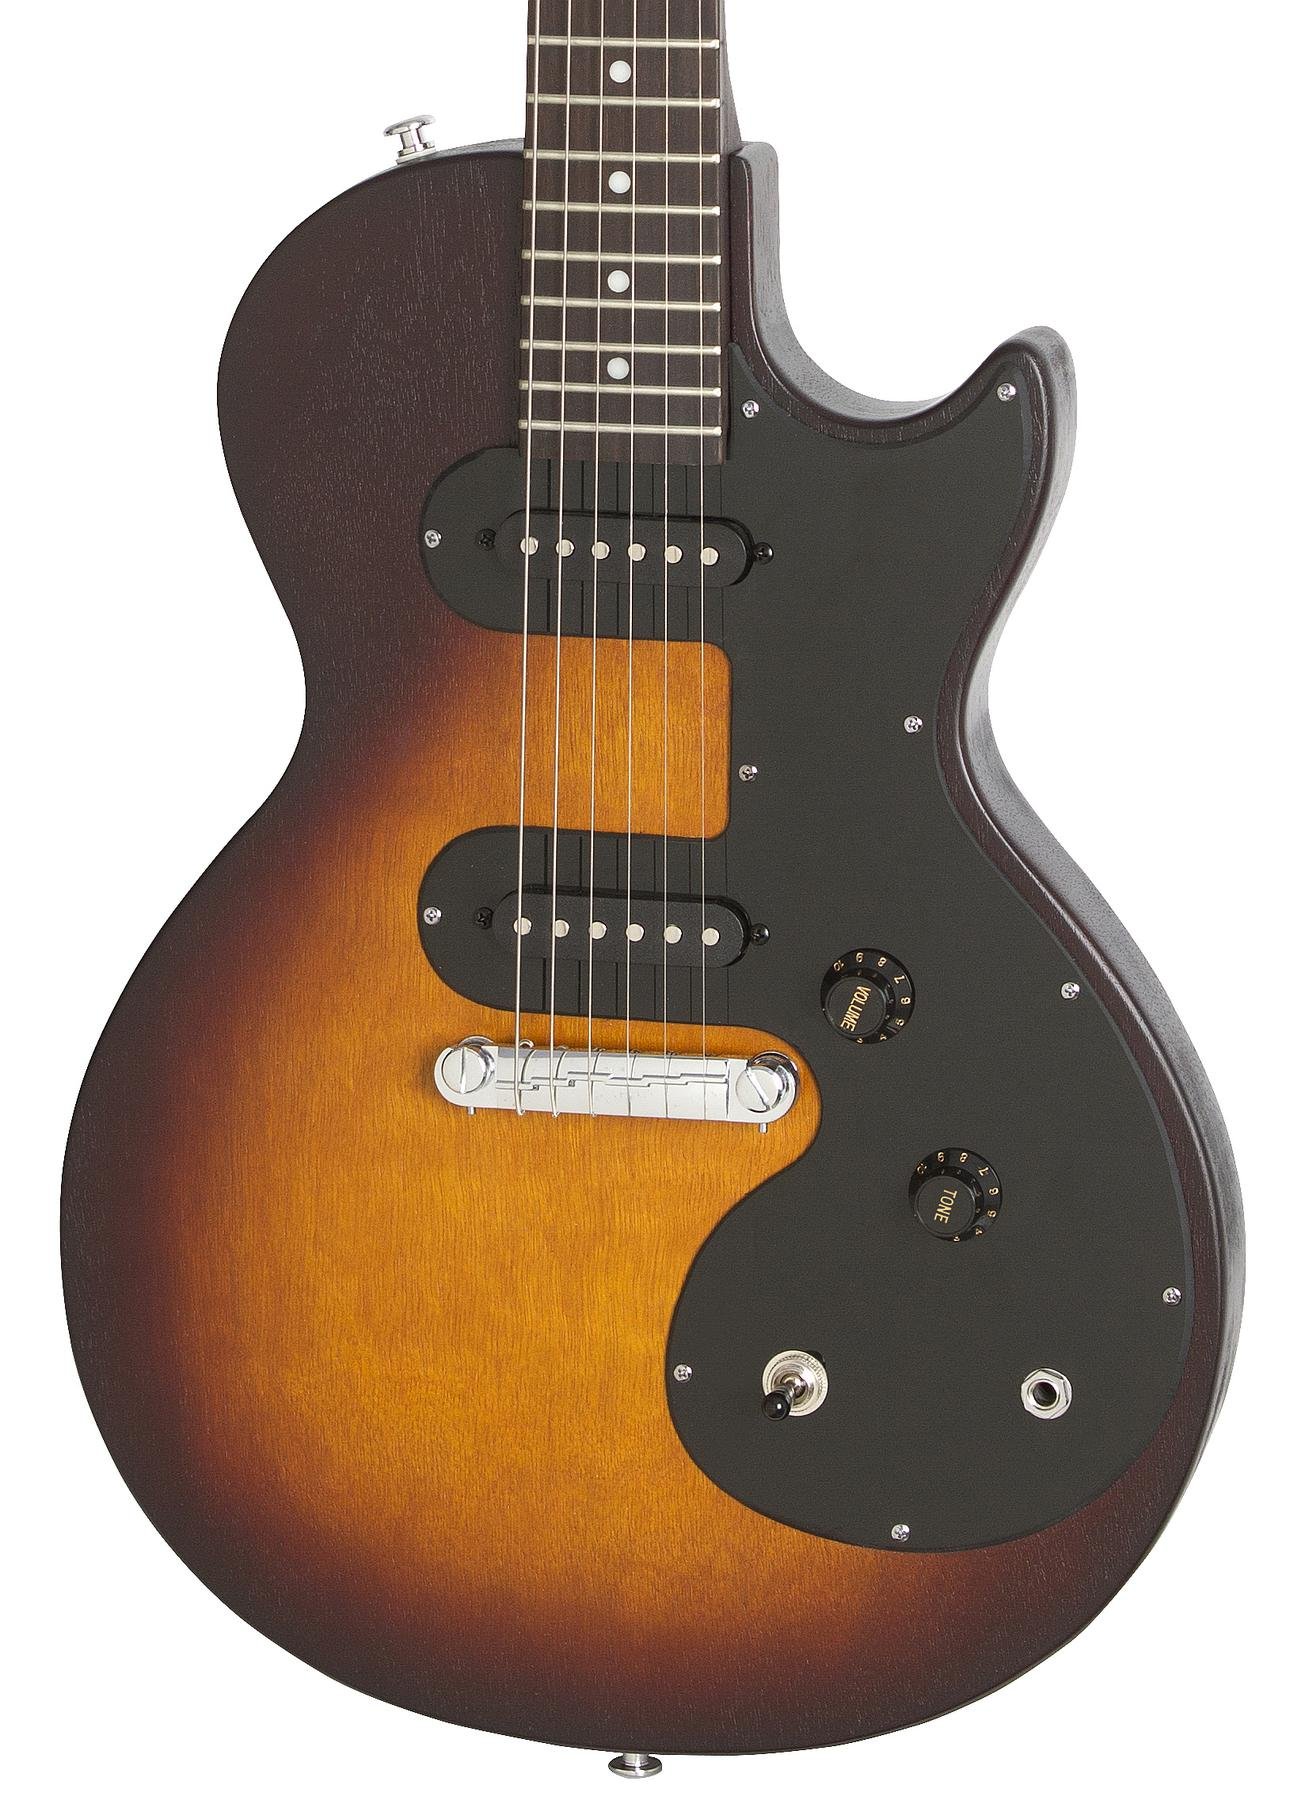 Epiphone Les Paul Melody Maker E1 2s Ht - Vintage Sunburst - Single cut electric guitar - Variation 1